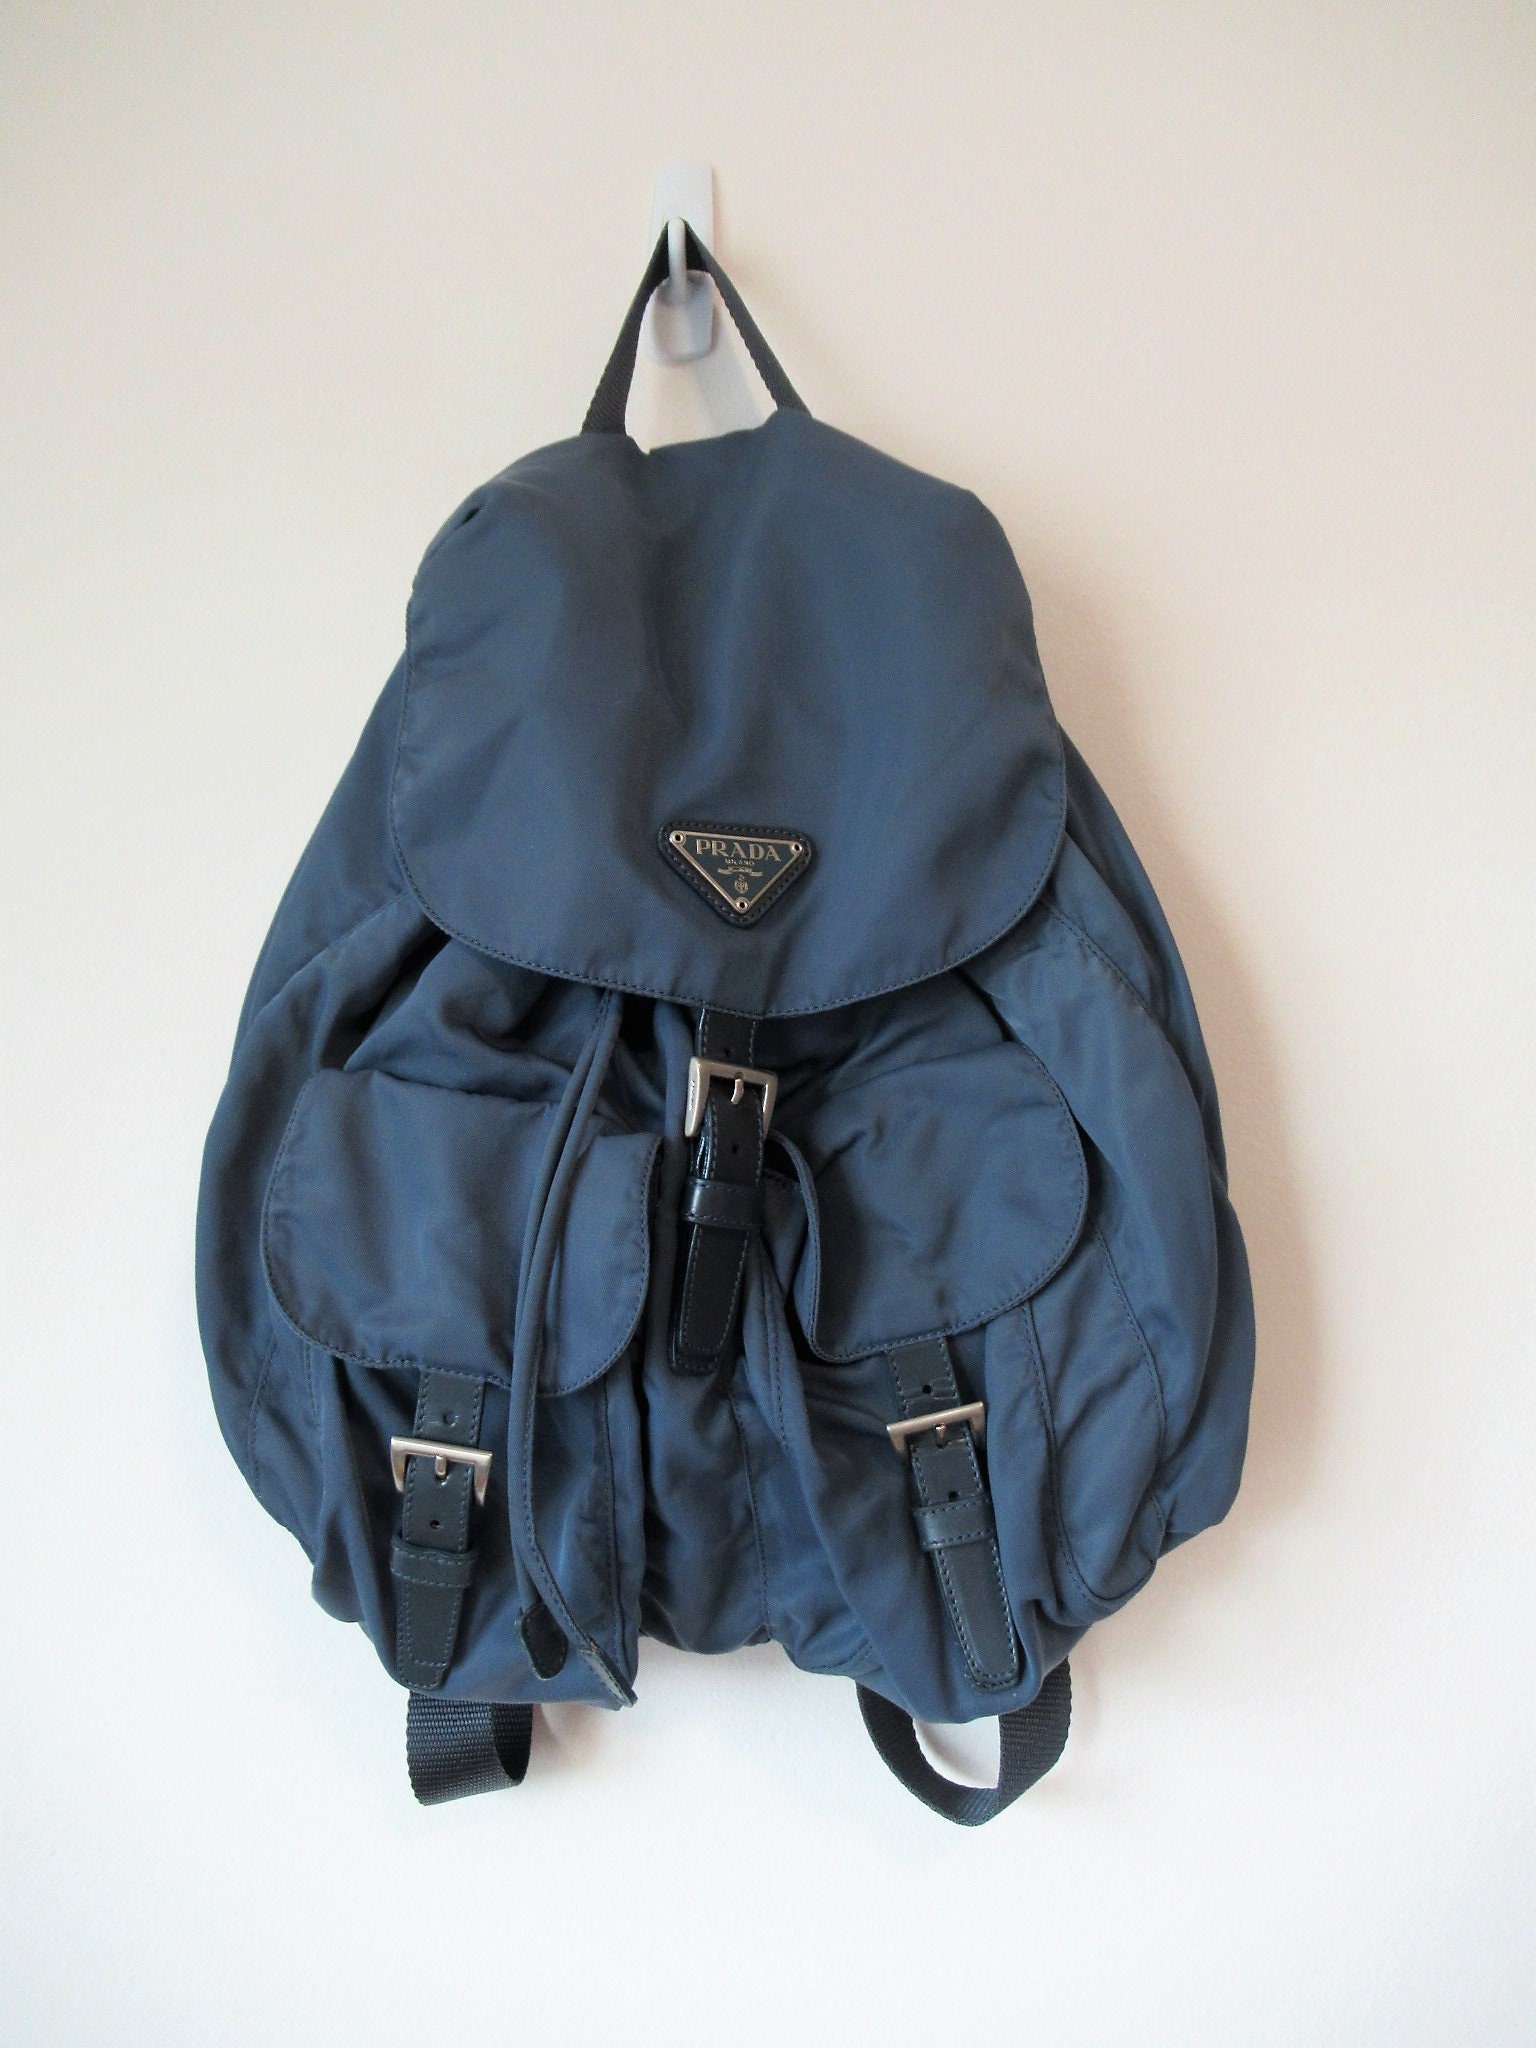 Prada Nylon Leather Backpack light blue blue Turquoise | Etsy